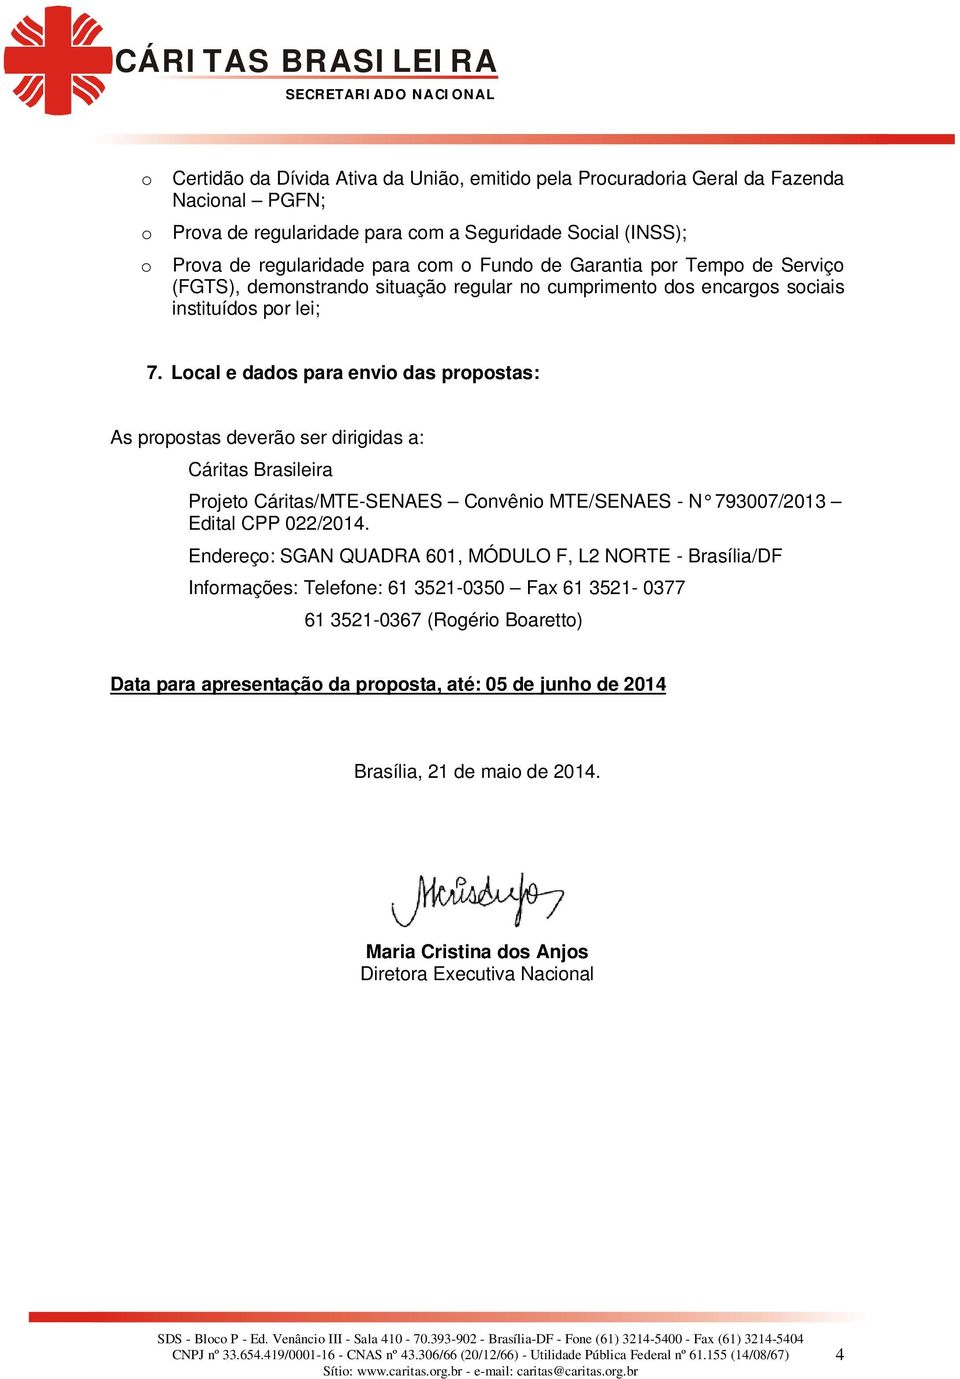 Local e dados para envio das propostas: As propostas deverão ser dirigidas a: Cáritas Brasileira Projeto Cáritas/MTE-SENAES Convênio MTE/SENAES - N 793007/2013 Edital CPP 022/2014.